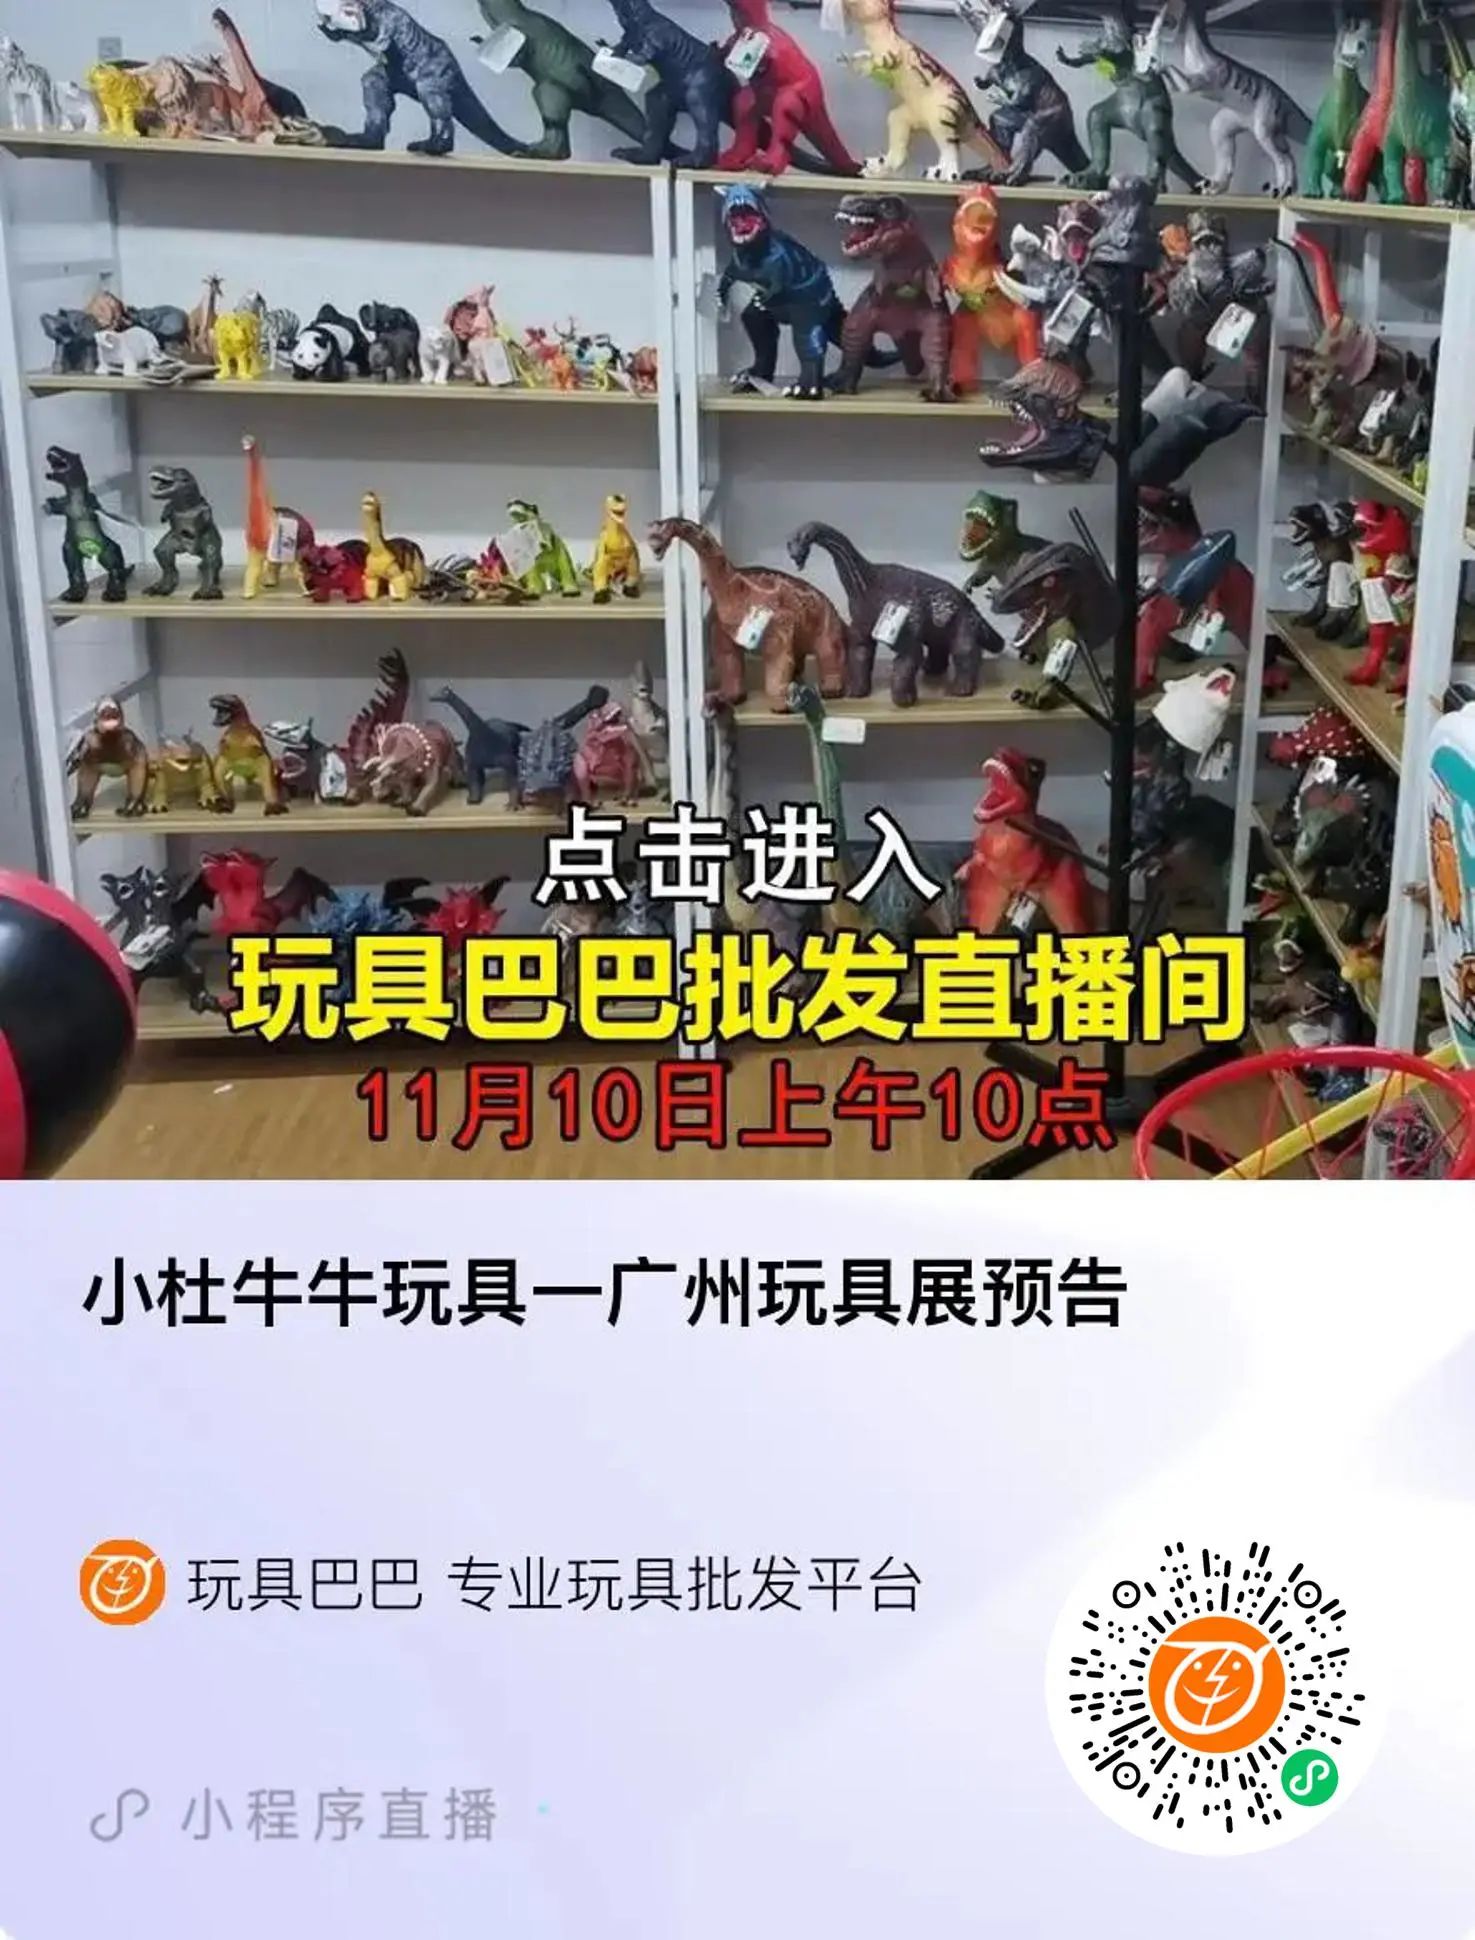 小杜牛牛玩具-广州玩具展预告